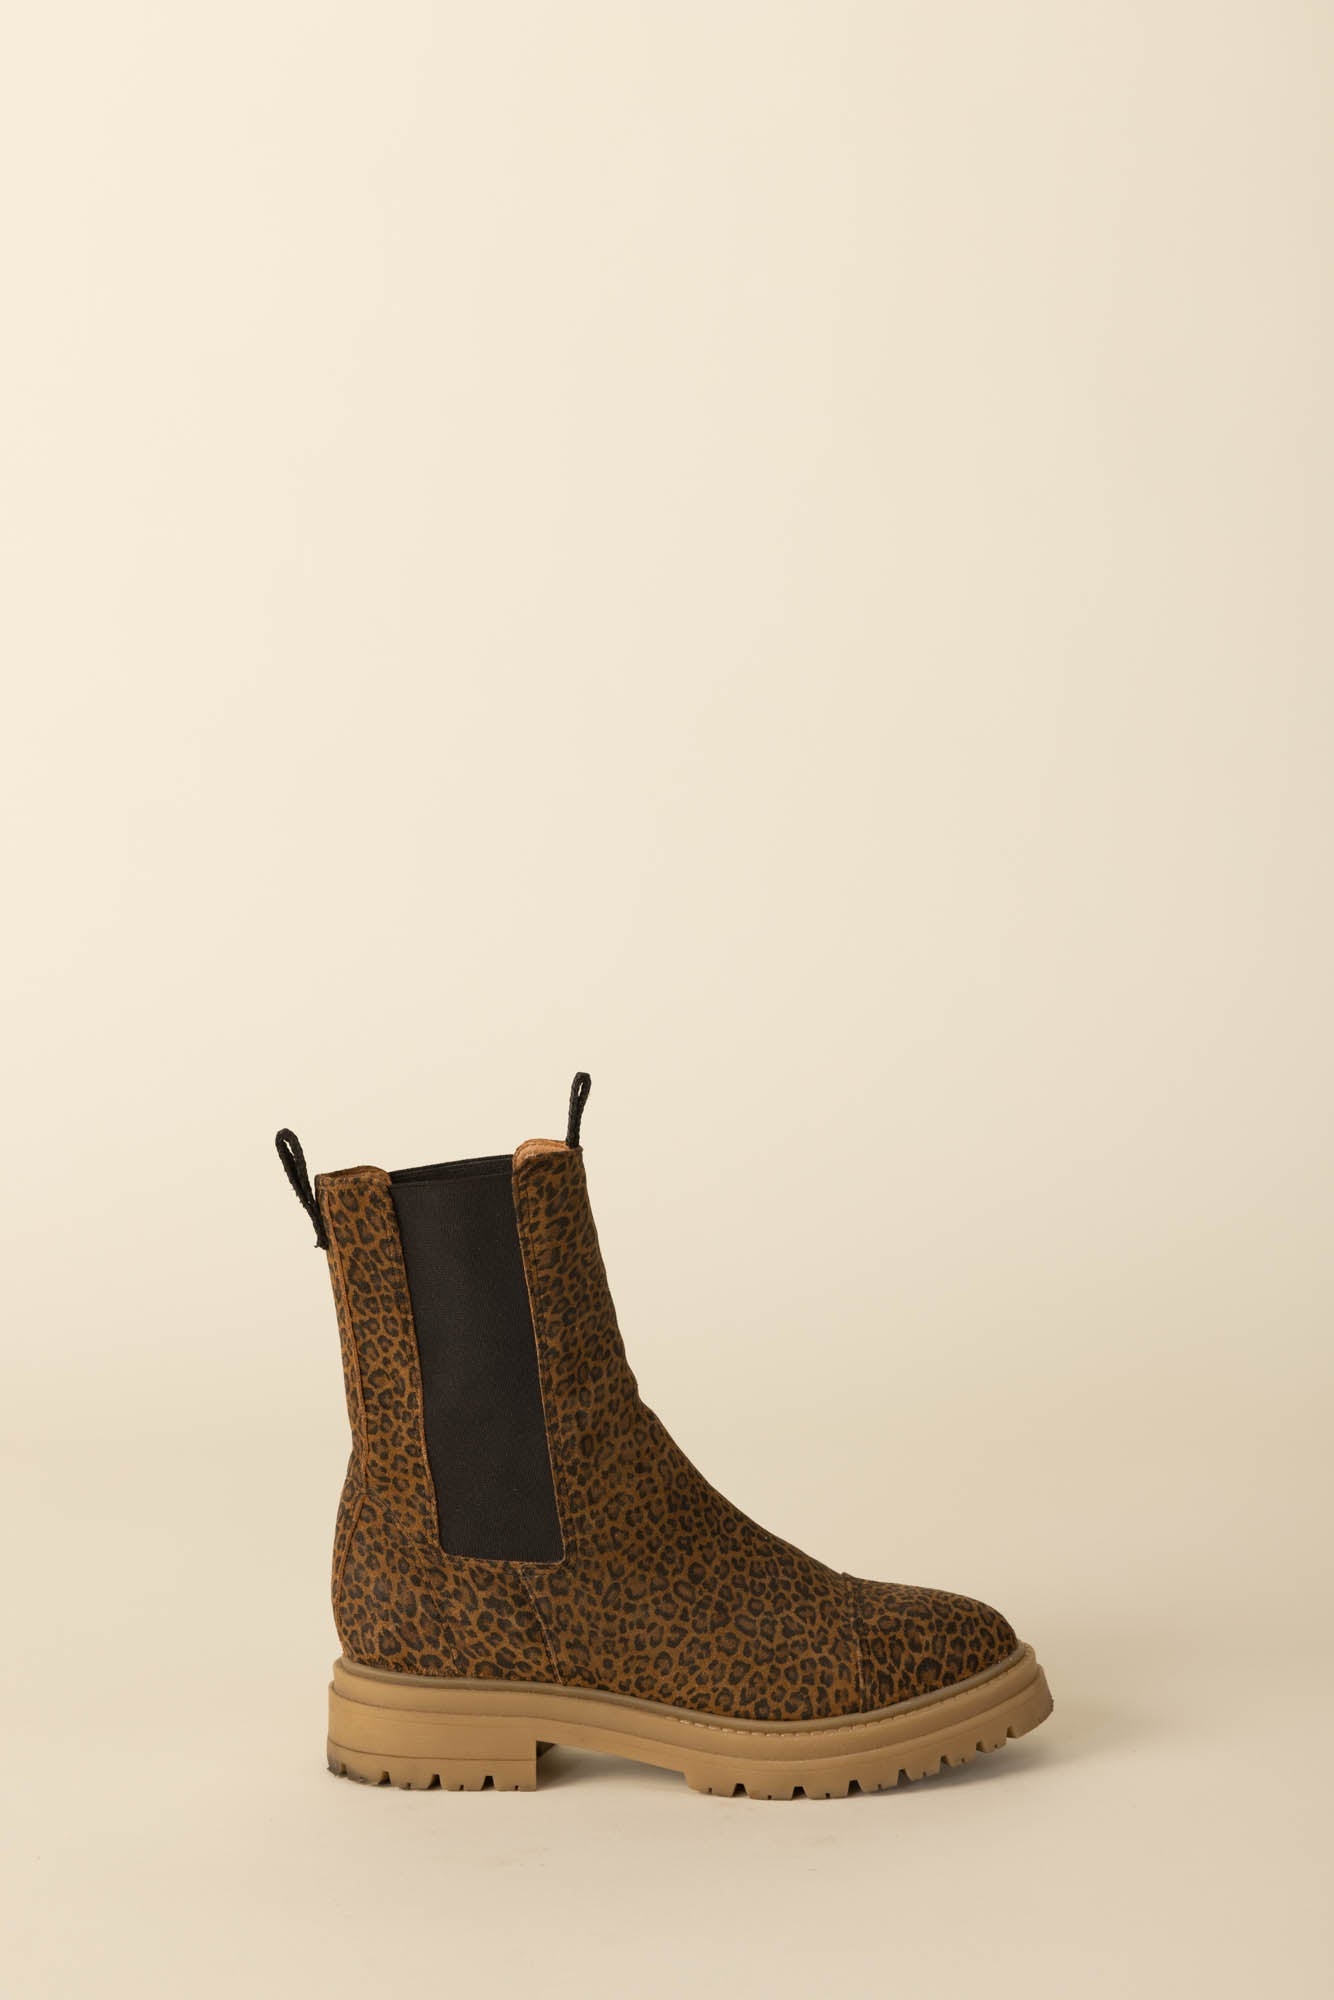 Leopard Fleuron ankle boots